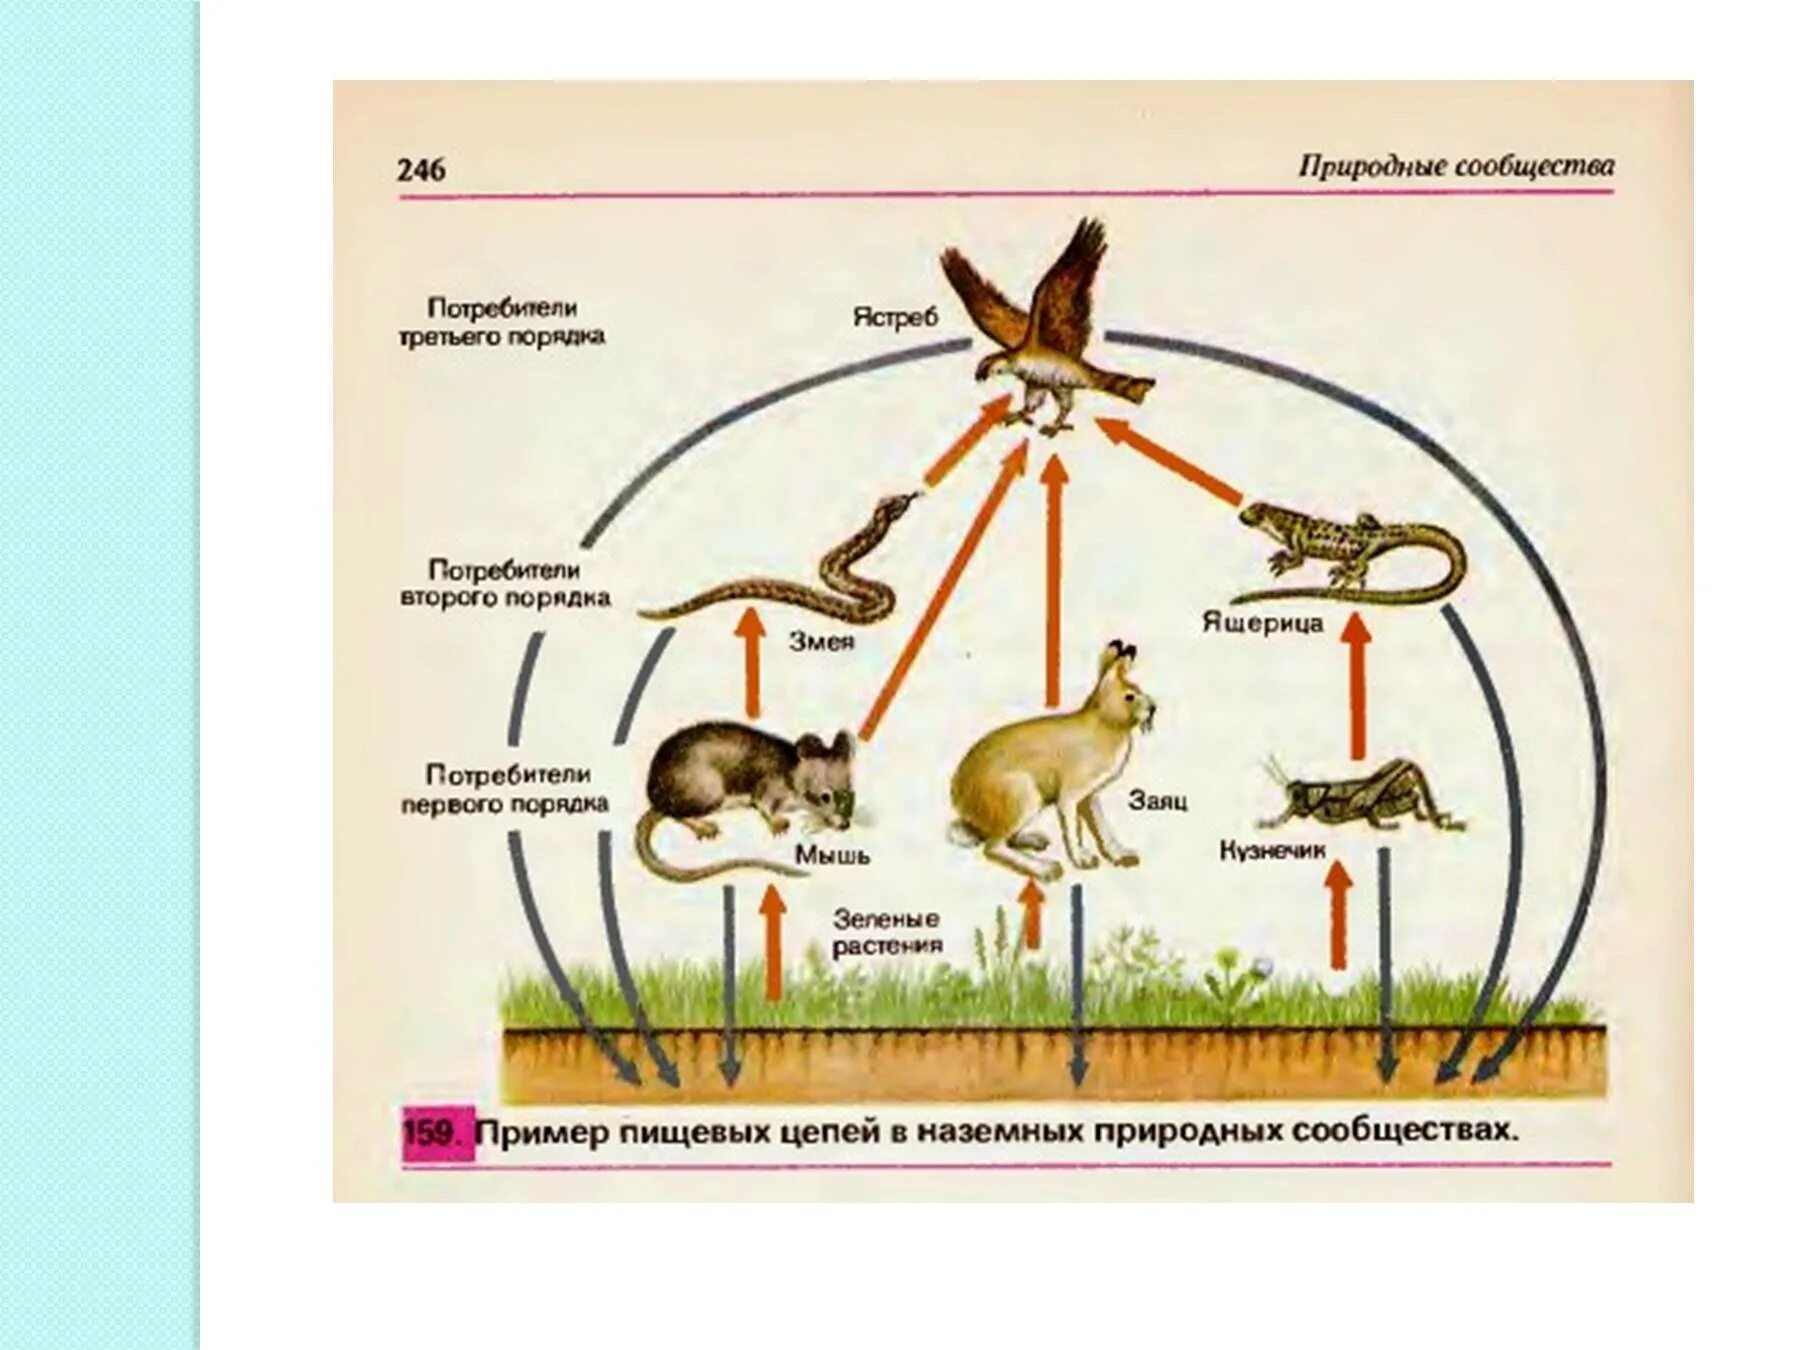 Биология цепь питания луга. Схема пищевых связей в природном сообществе Луга. Схема круговорота веществ на лугу. Цепь питания с круговоротом веществ. Цепочка питания круговорот.